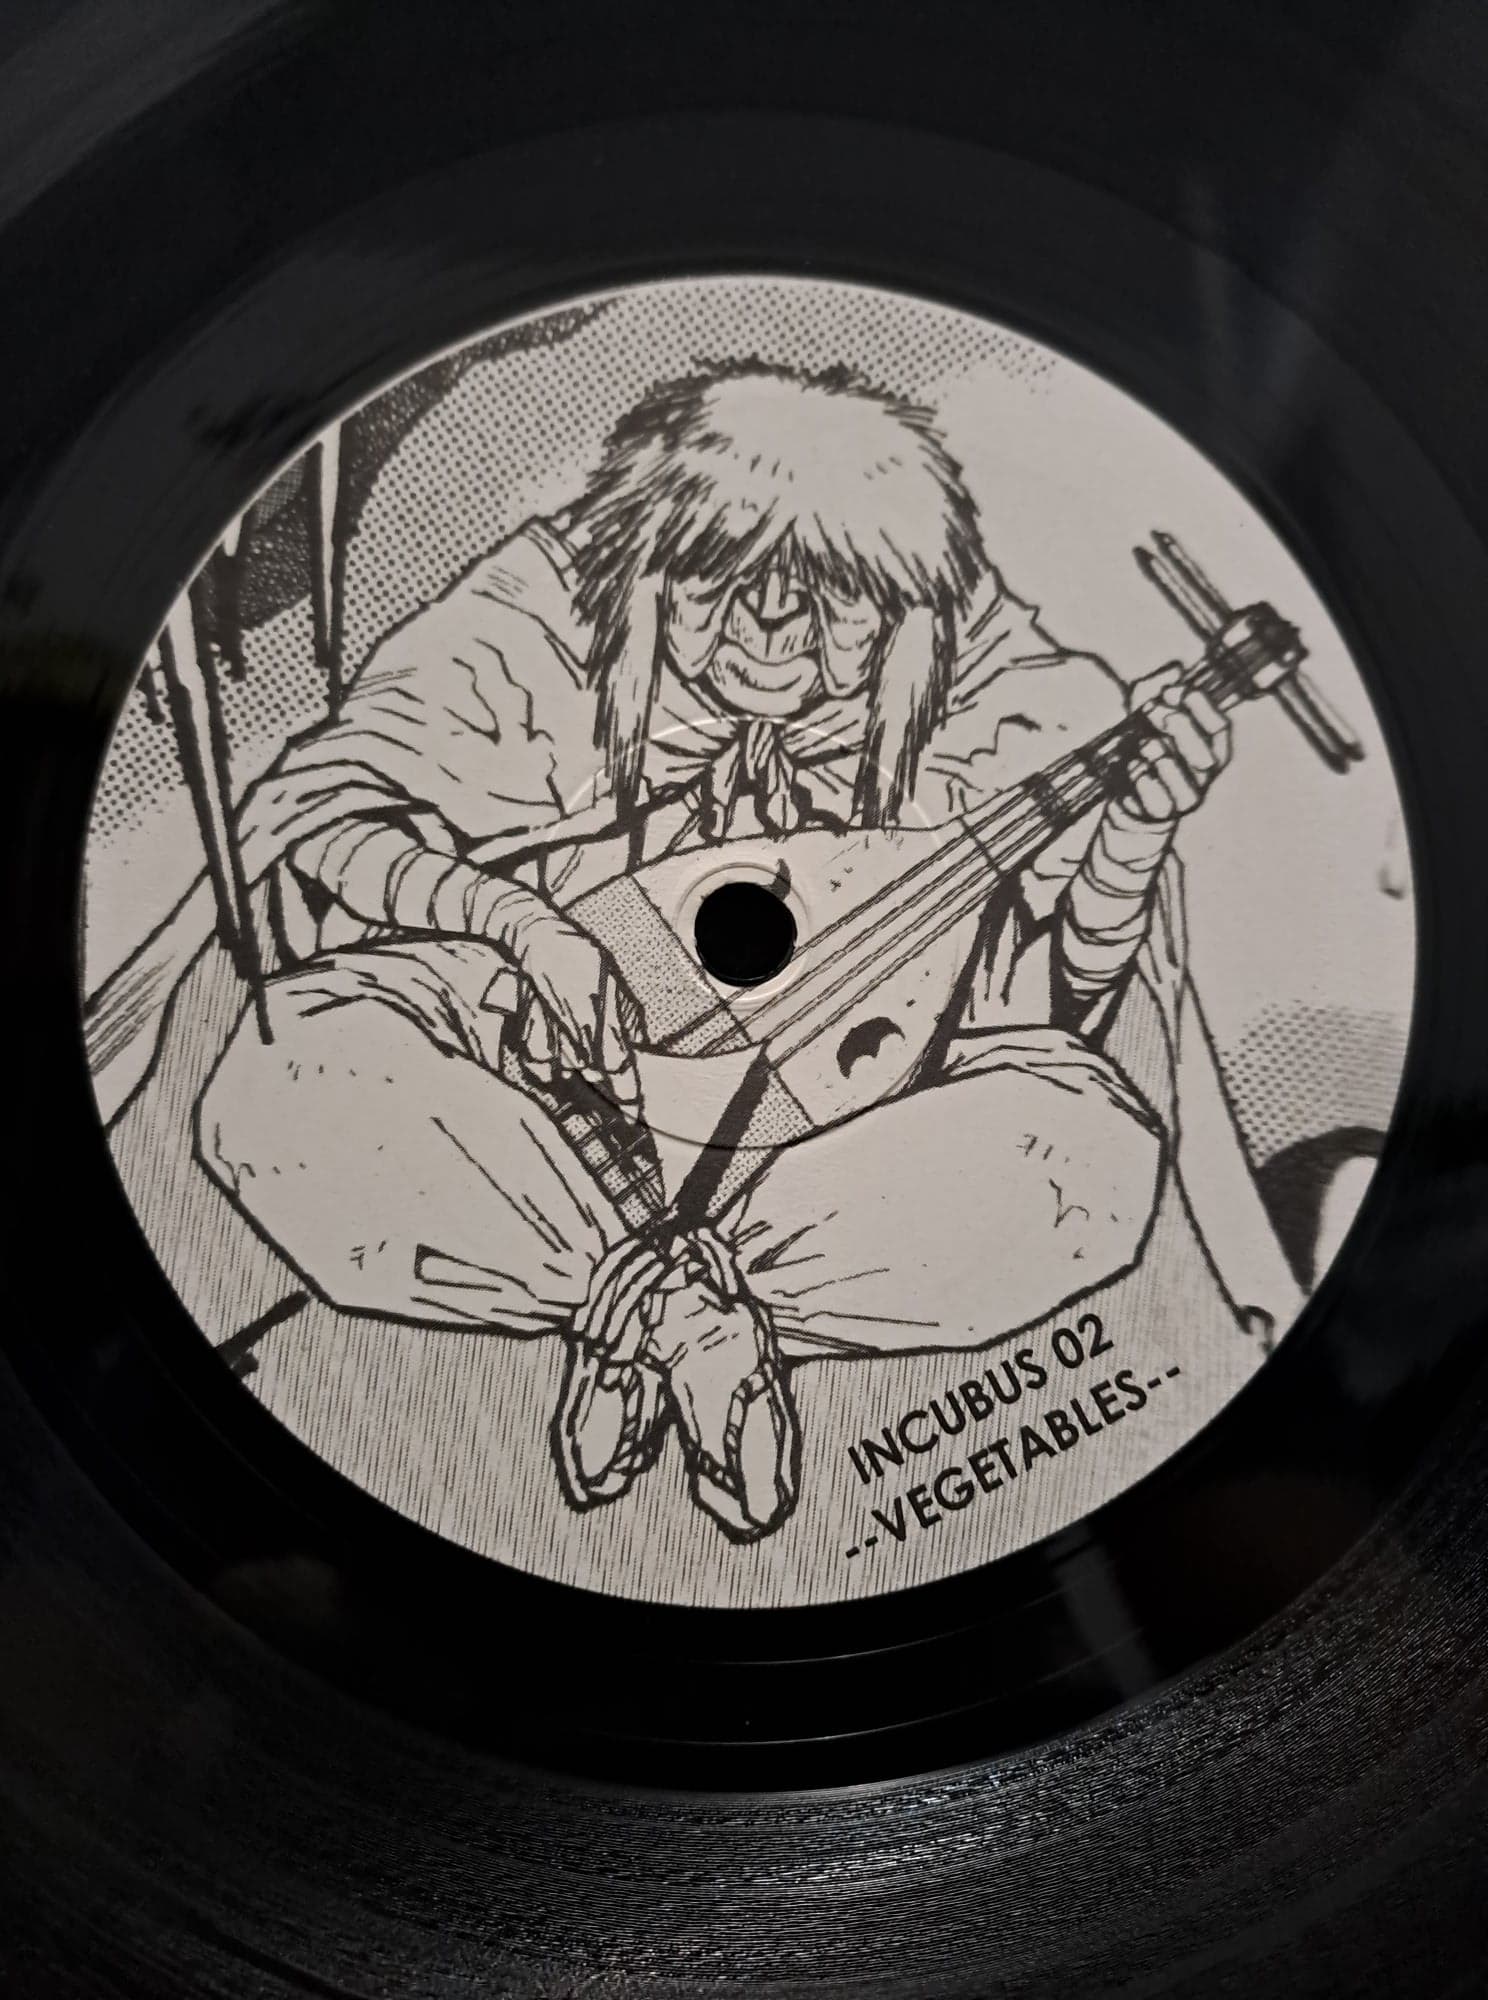 Incubus 002 - vinyle hardcore